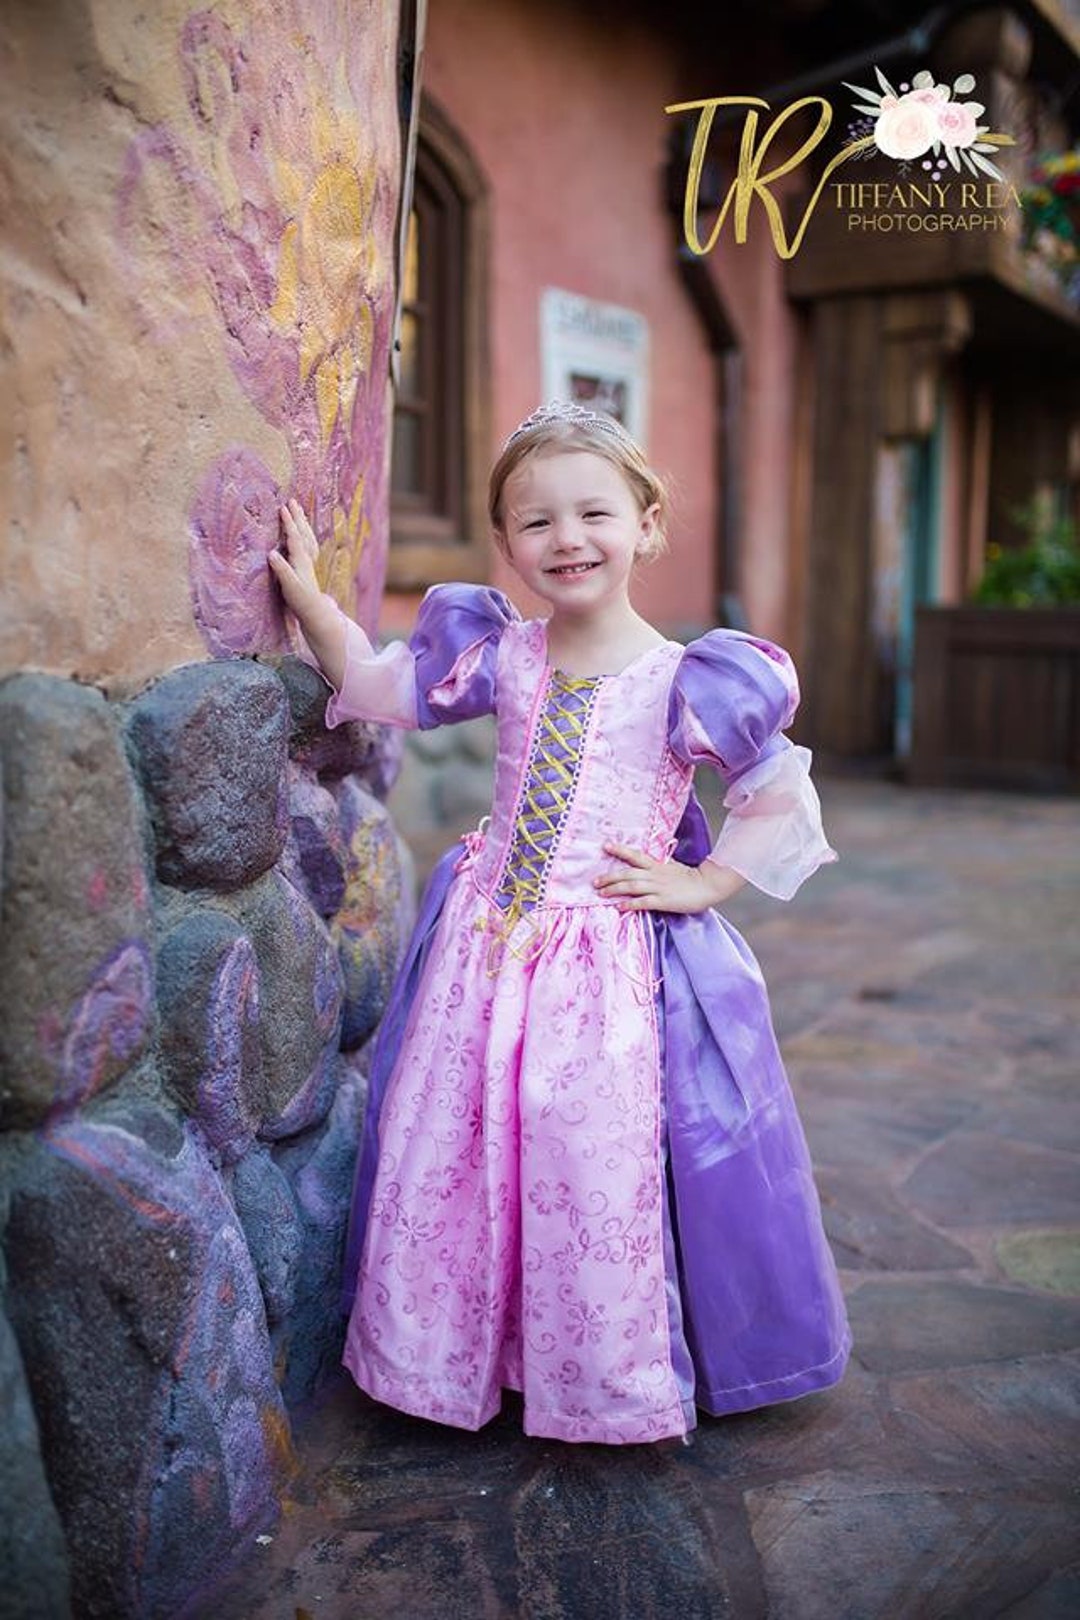 Déguisement Raiponce Disney Store taille 5-6 ans robe princesse violet  tulle fleurs - Déguisements/Taille 4 à 6 ans - La Boutique Disney